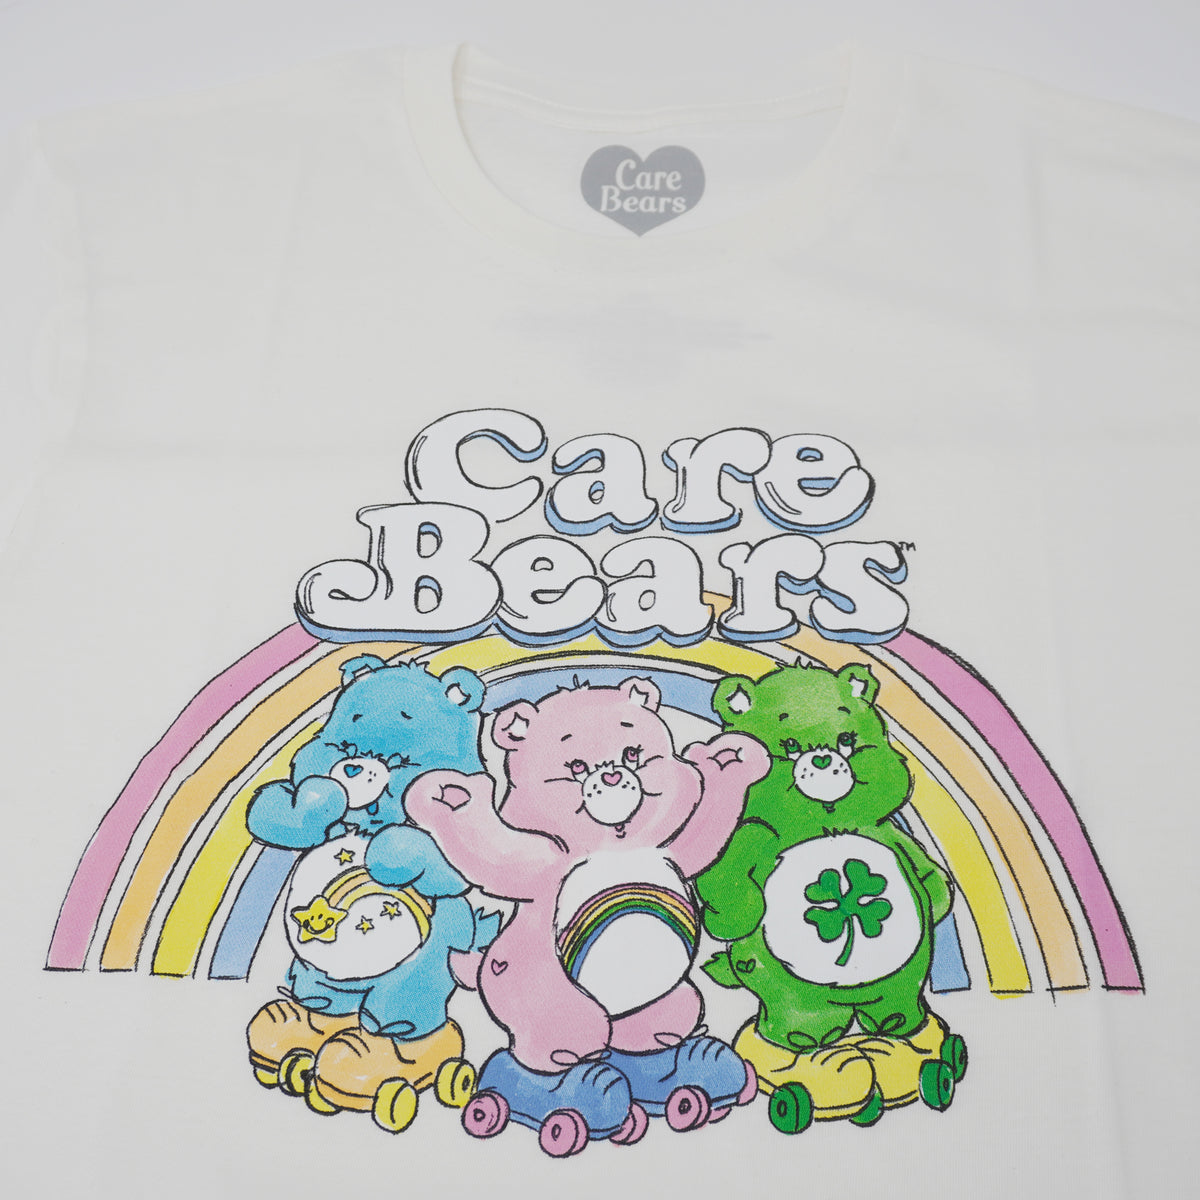 White Such Cute Rainbow Care Bear Crop Top T-Shirt